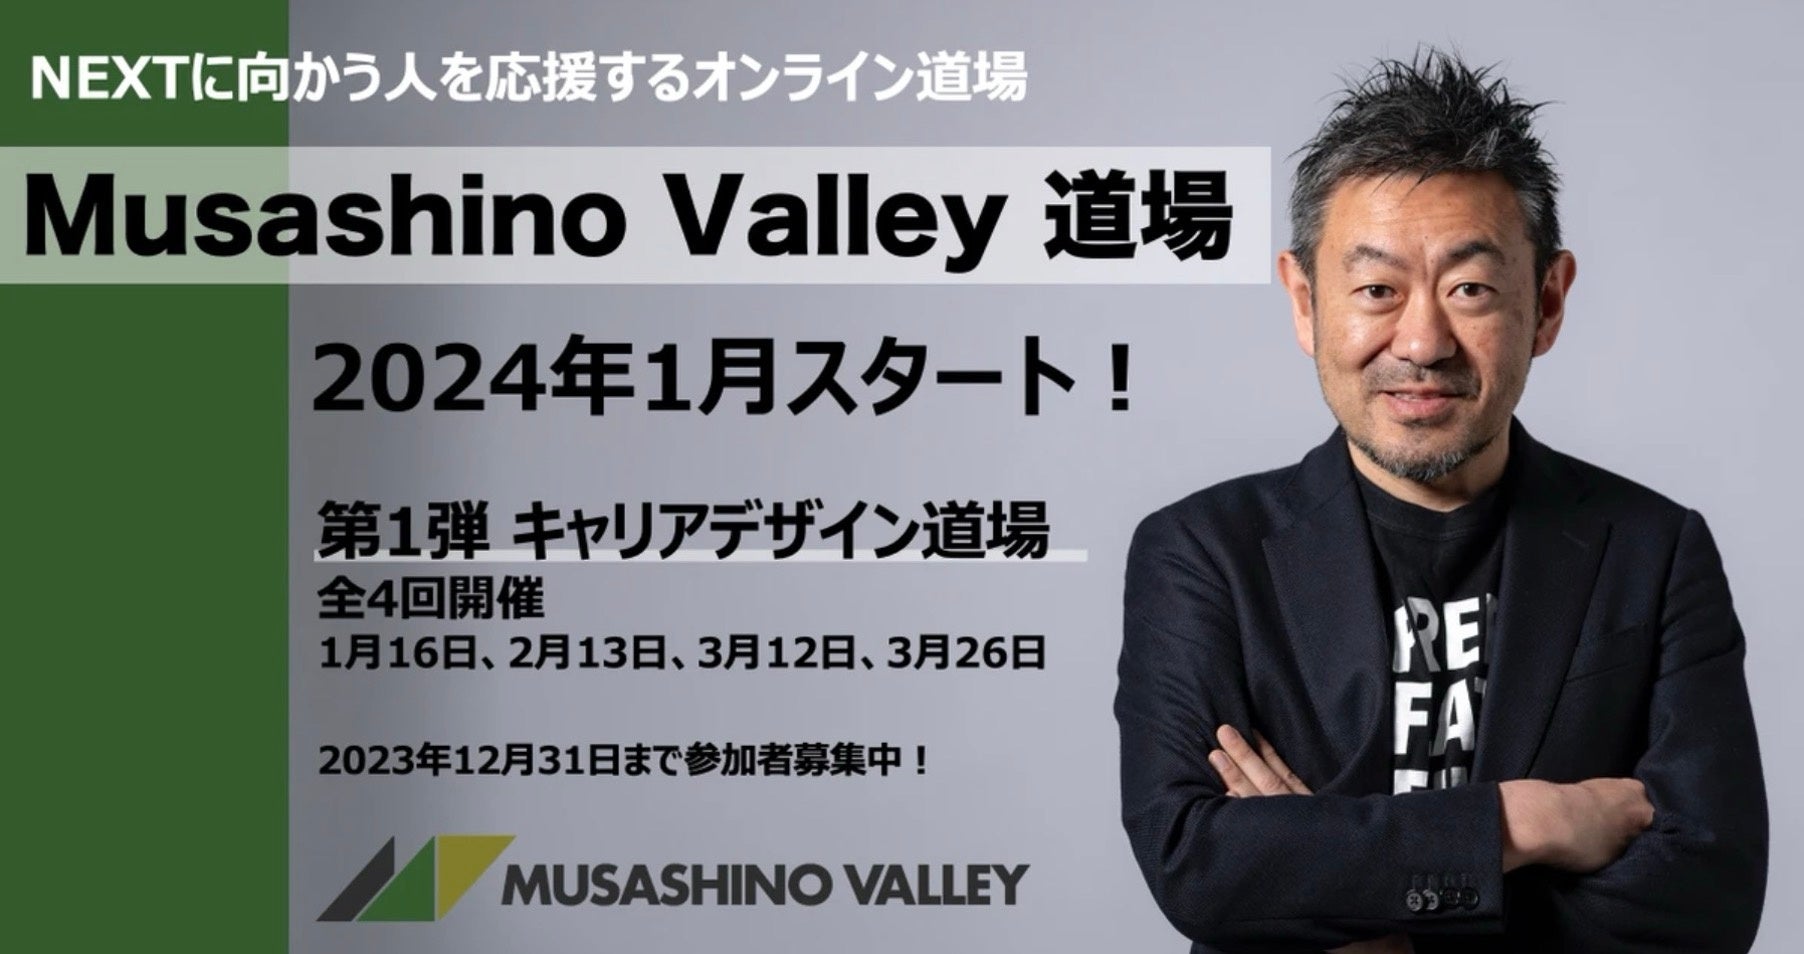 NEXTɌlICXN[uMusashino Valley v2024N1X^[g